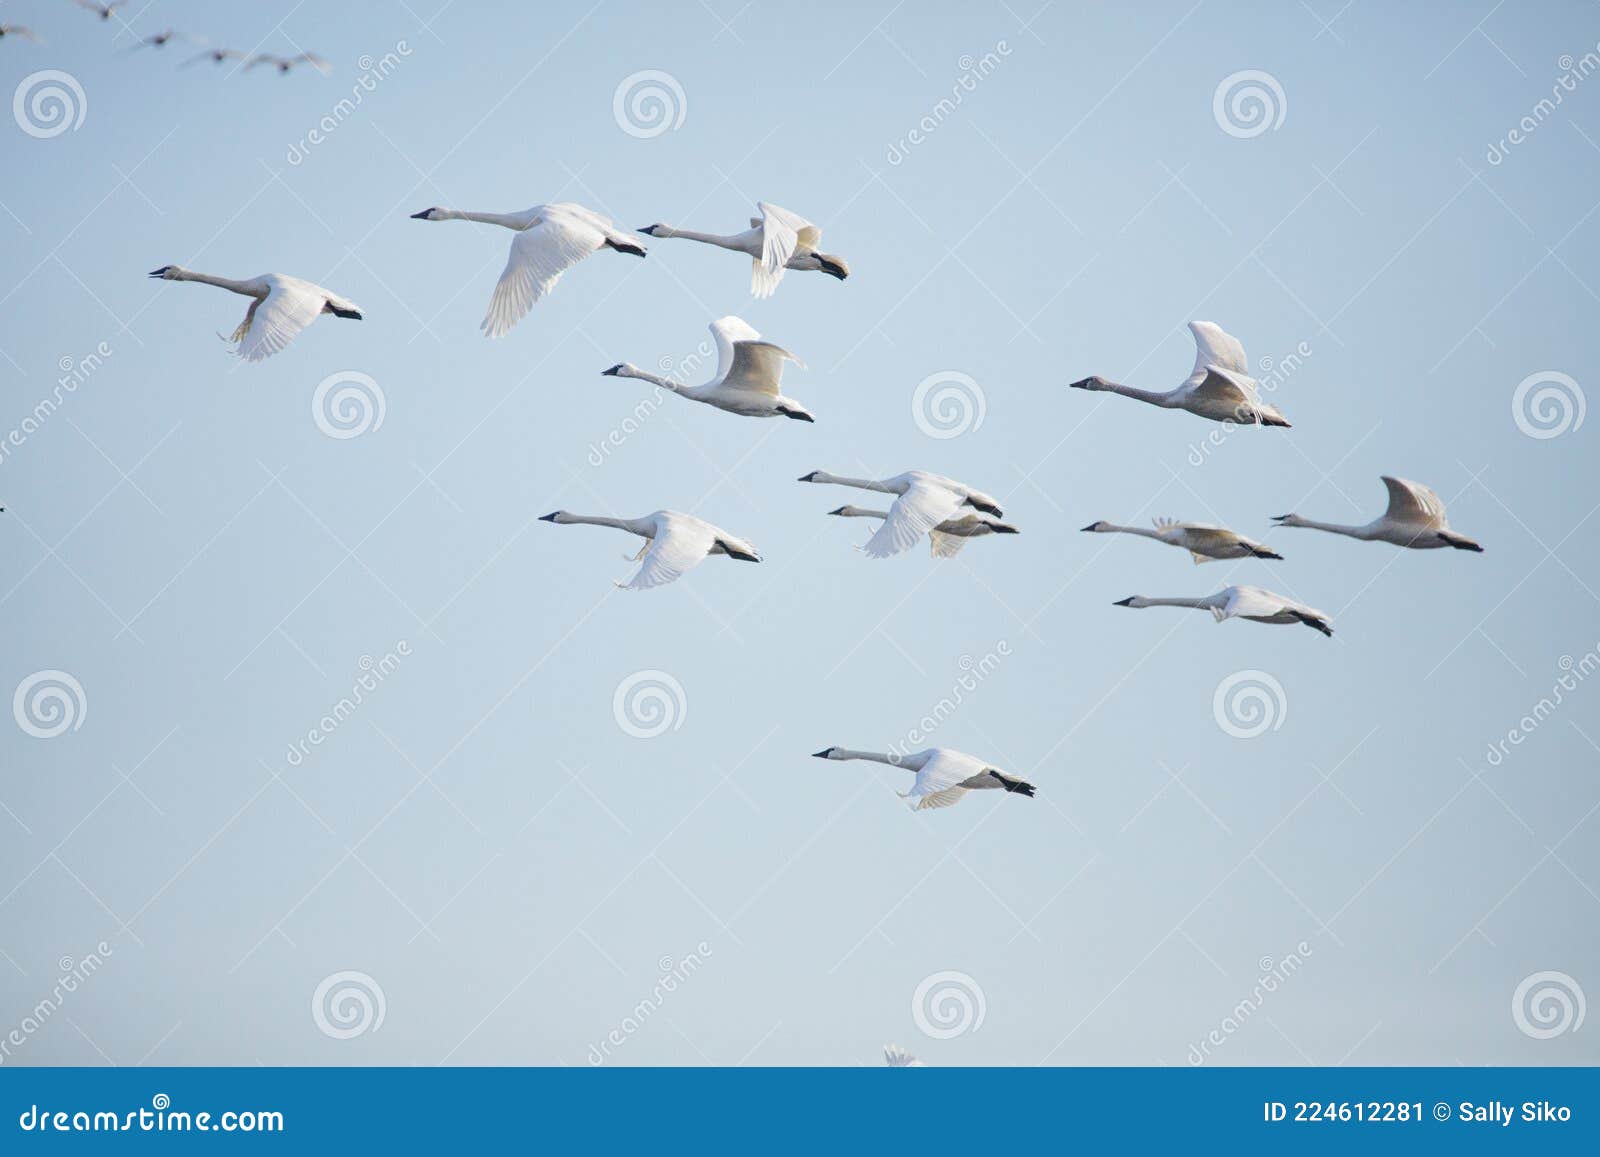 tundra swan migration pungo unit pocosin lakes nwr